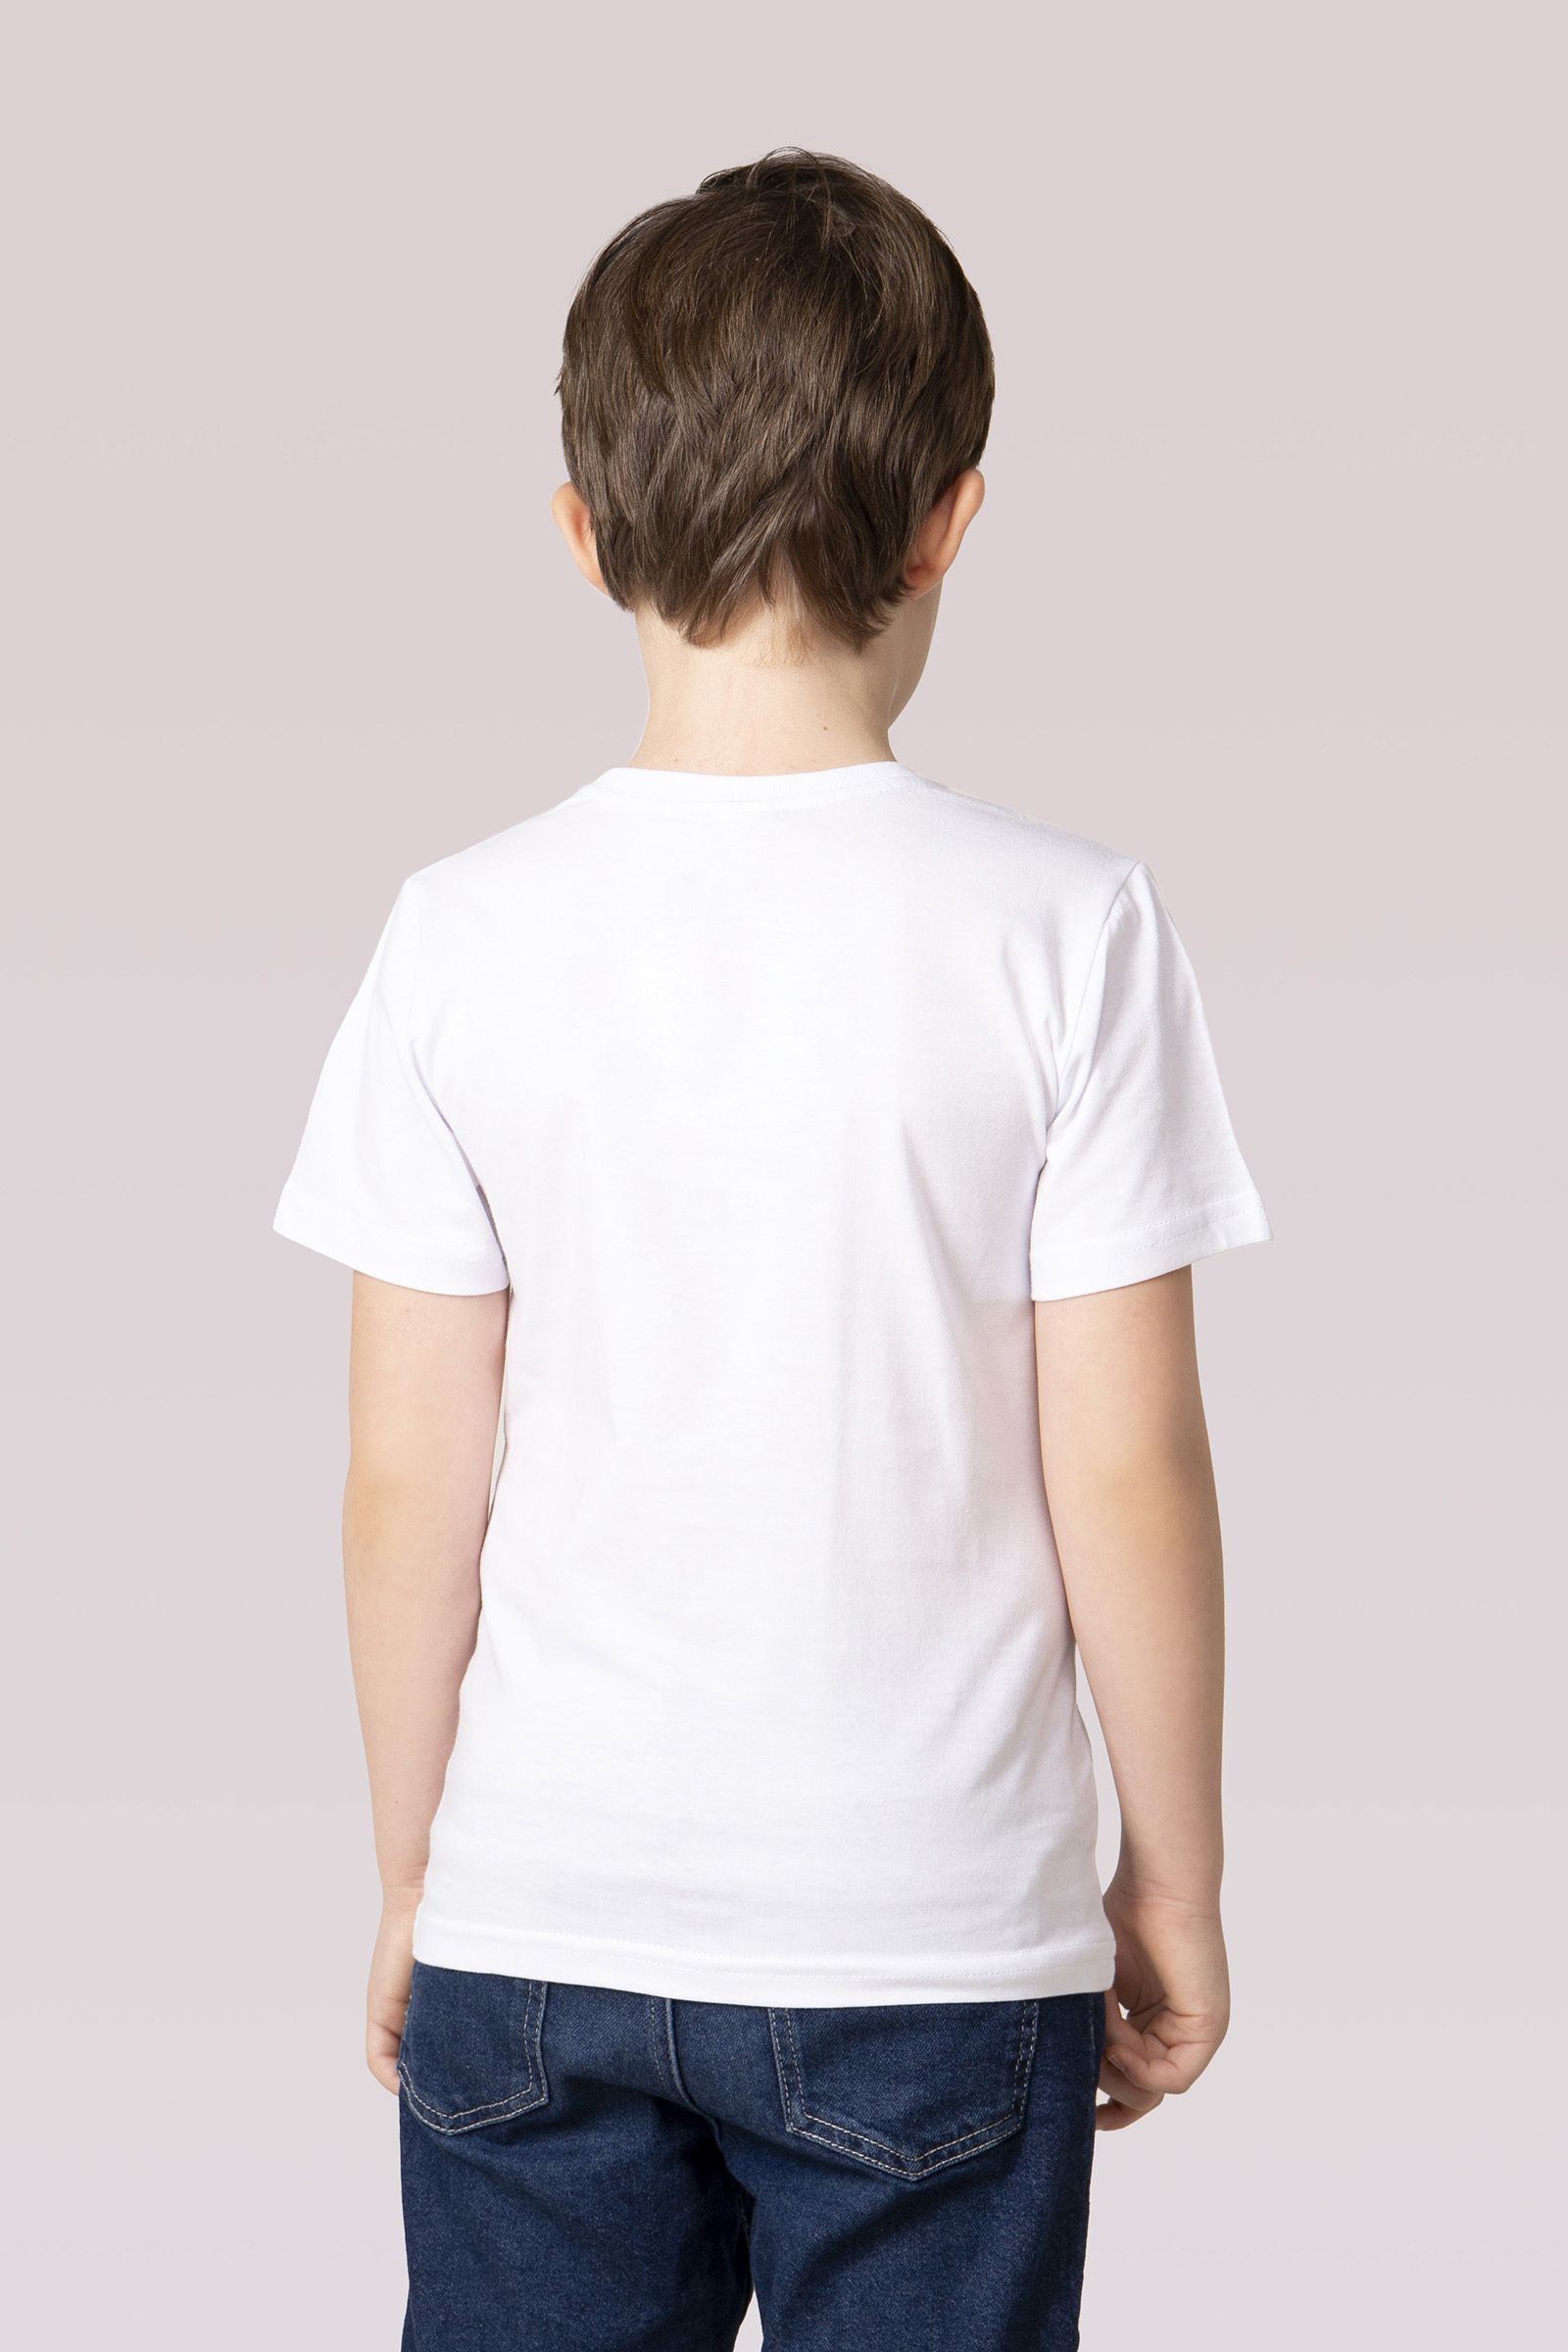 Джемпер-ДЖ02-3771 оптом от производителя детской одежды 'Алёна'